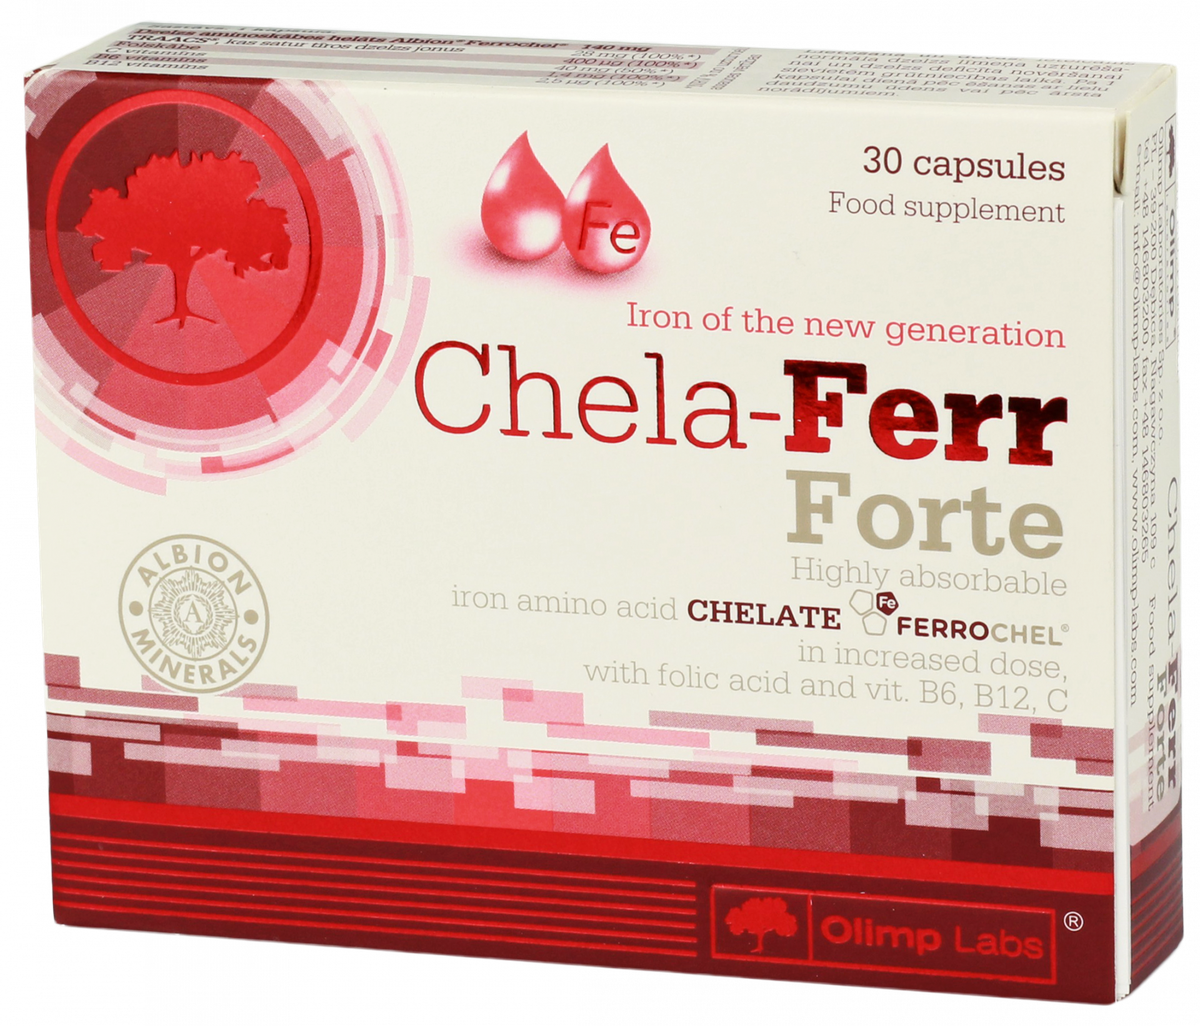 Chela-ferr Forte 30 капс Olimp. Olimp Lab ferr Forte. Olimp Labs Chela ferr Forte 30 капс. Chela ferr Forte отзывы.